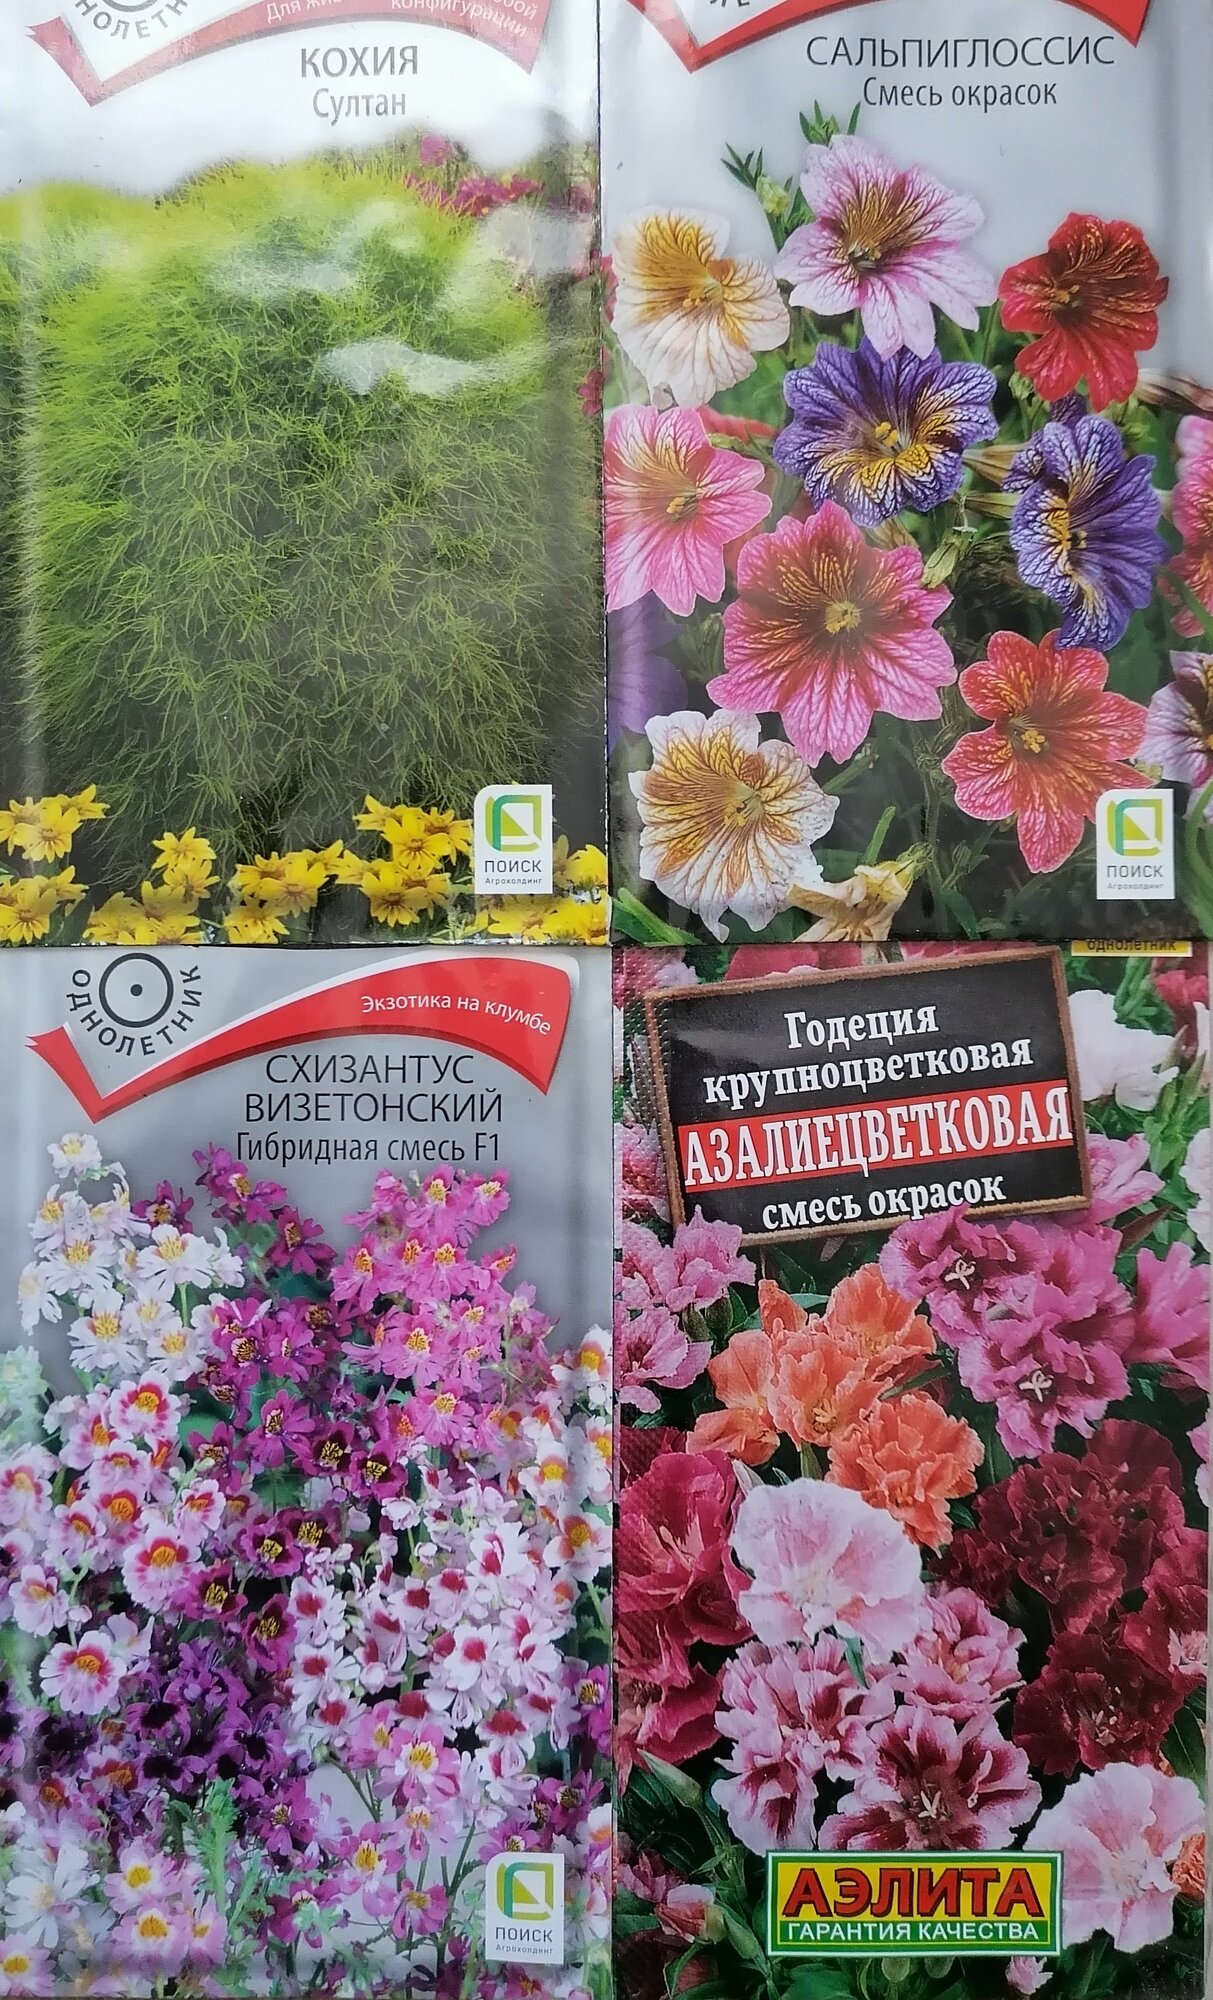 Набор 1 супер цветов однолетников для клумбы Сальпиглоссис Кохия Схизантус Годеция азалиецветковая (4 пачки)